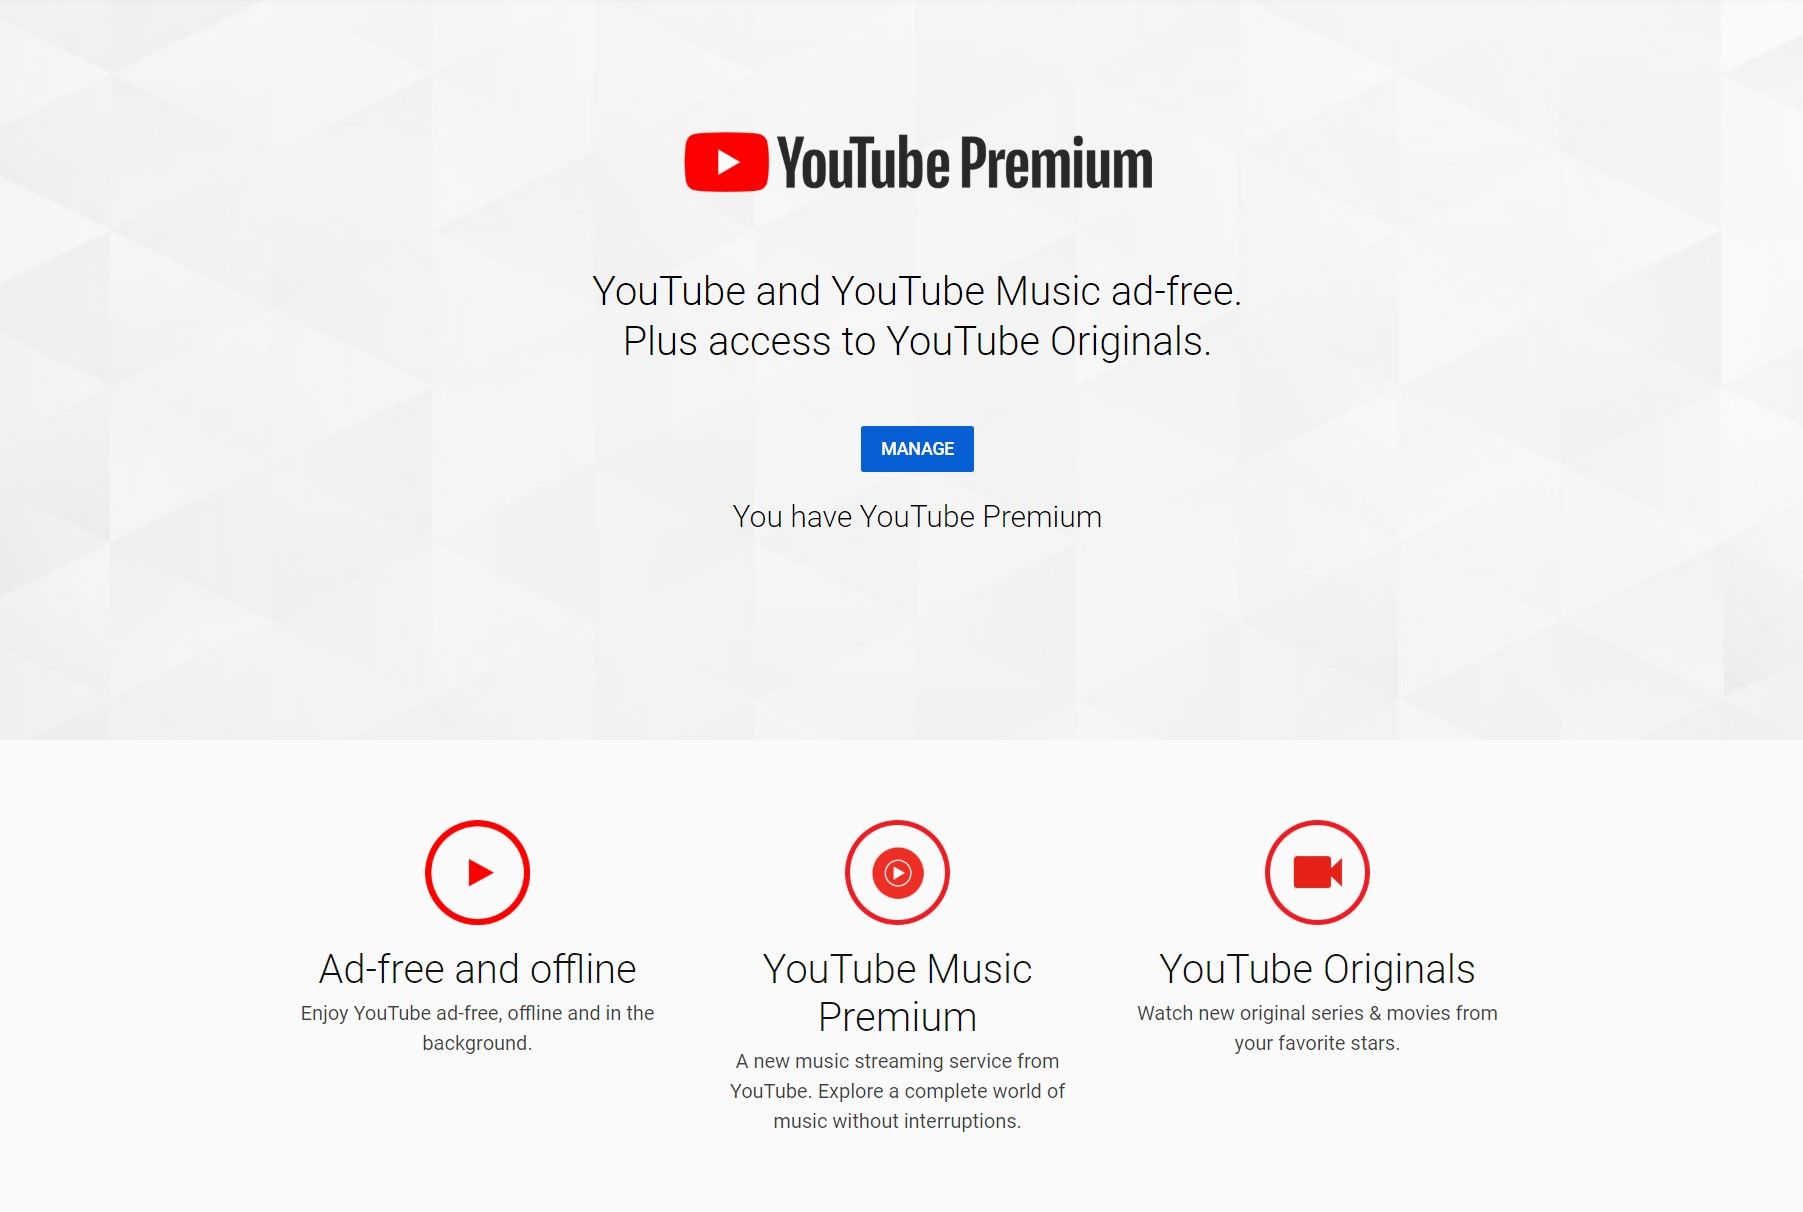 YouTube Premium Features